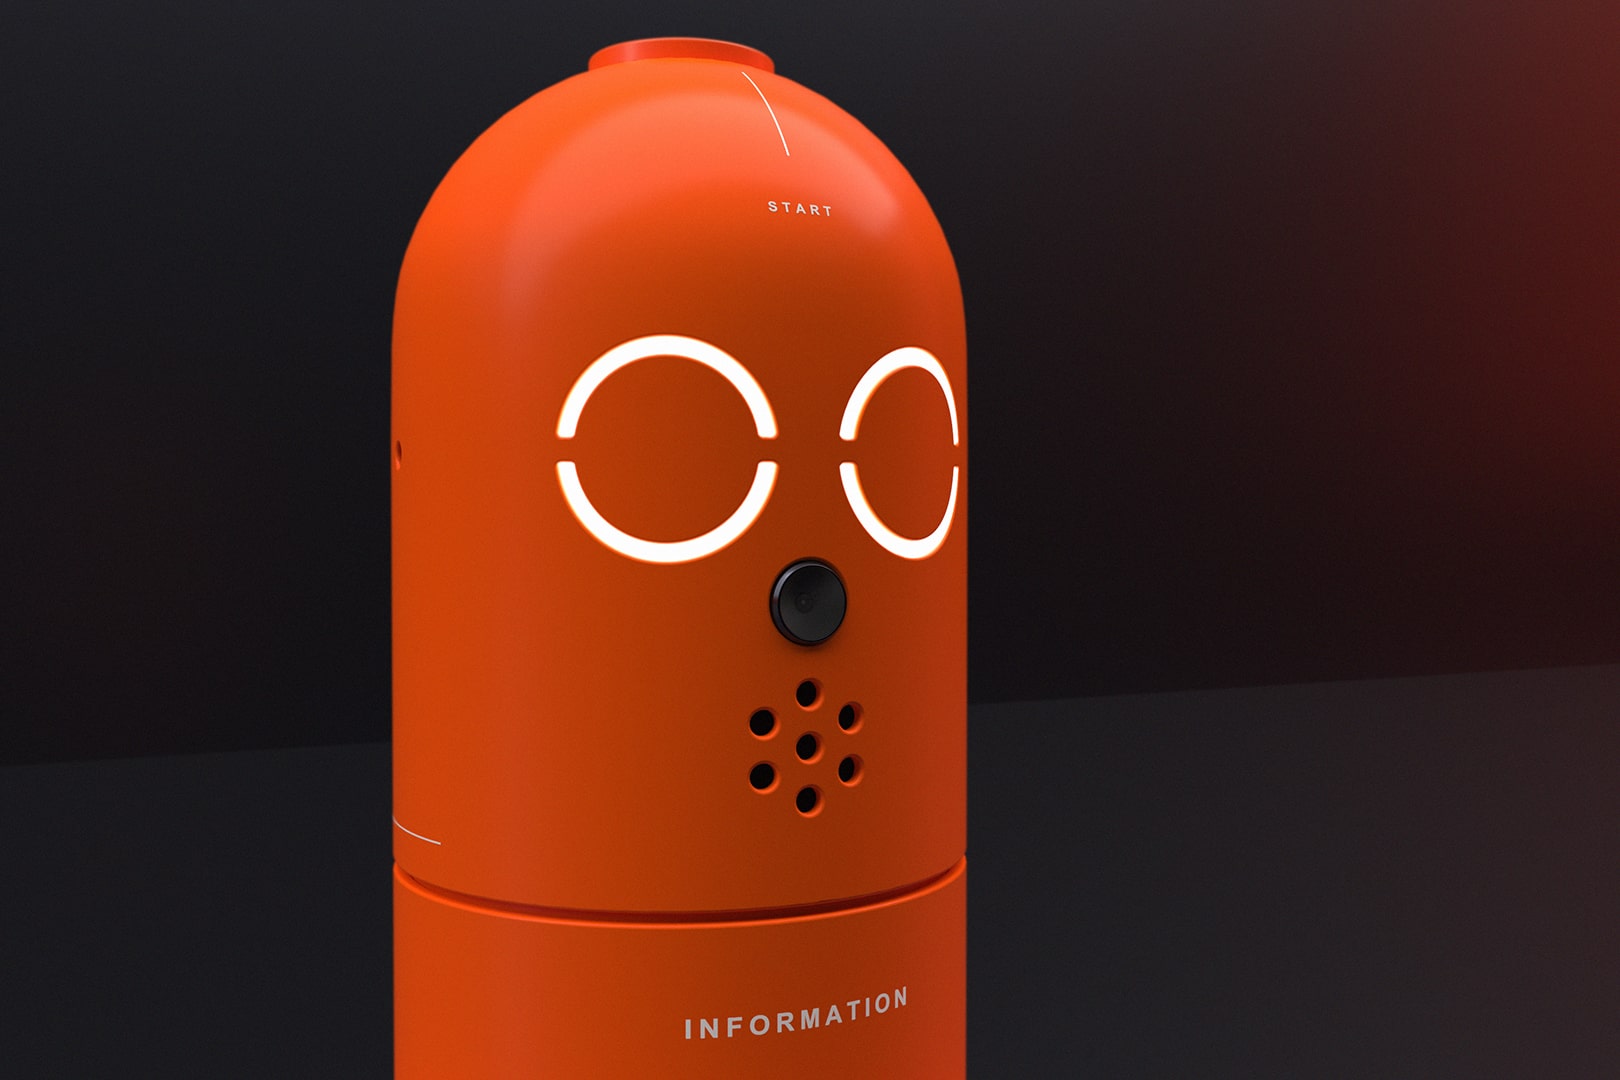 Information Robot Face @object_designer